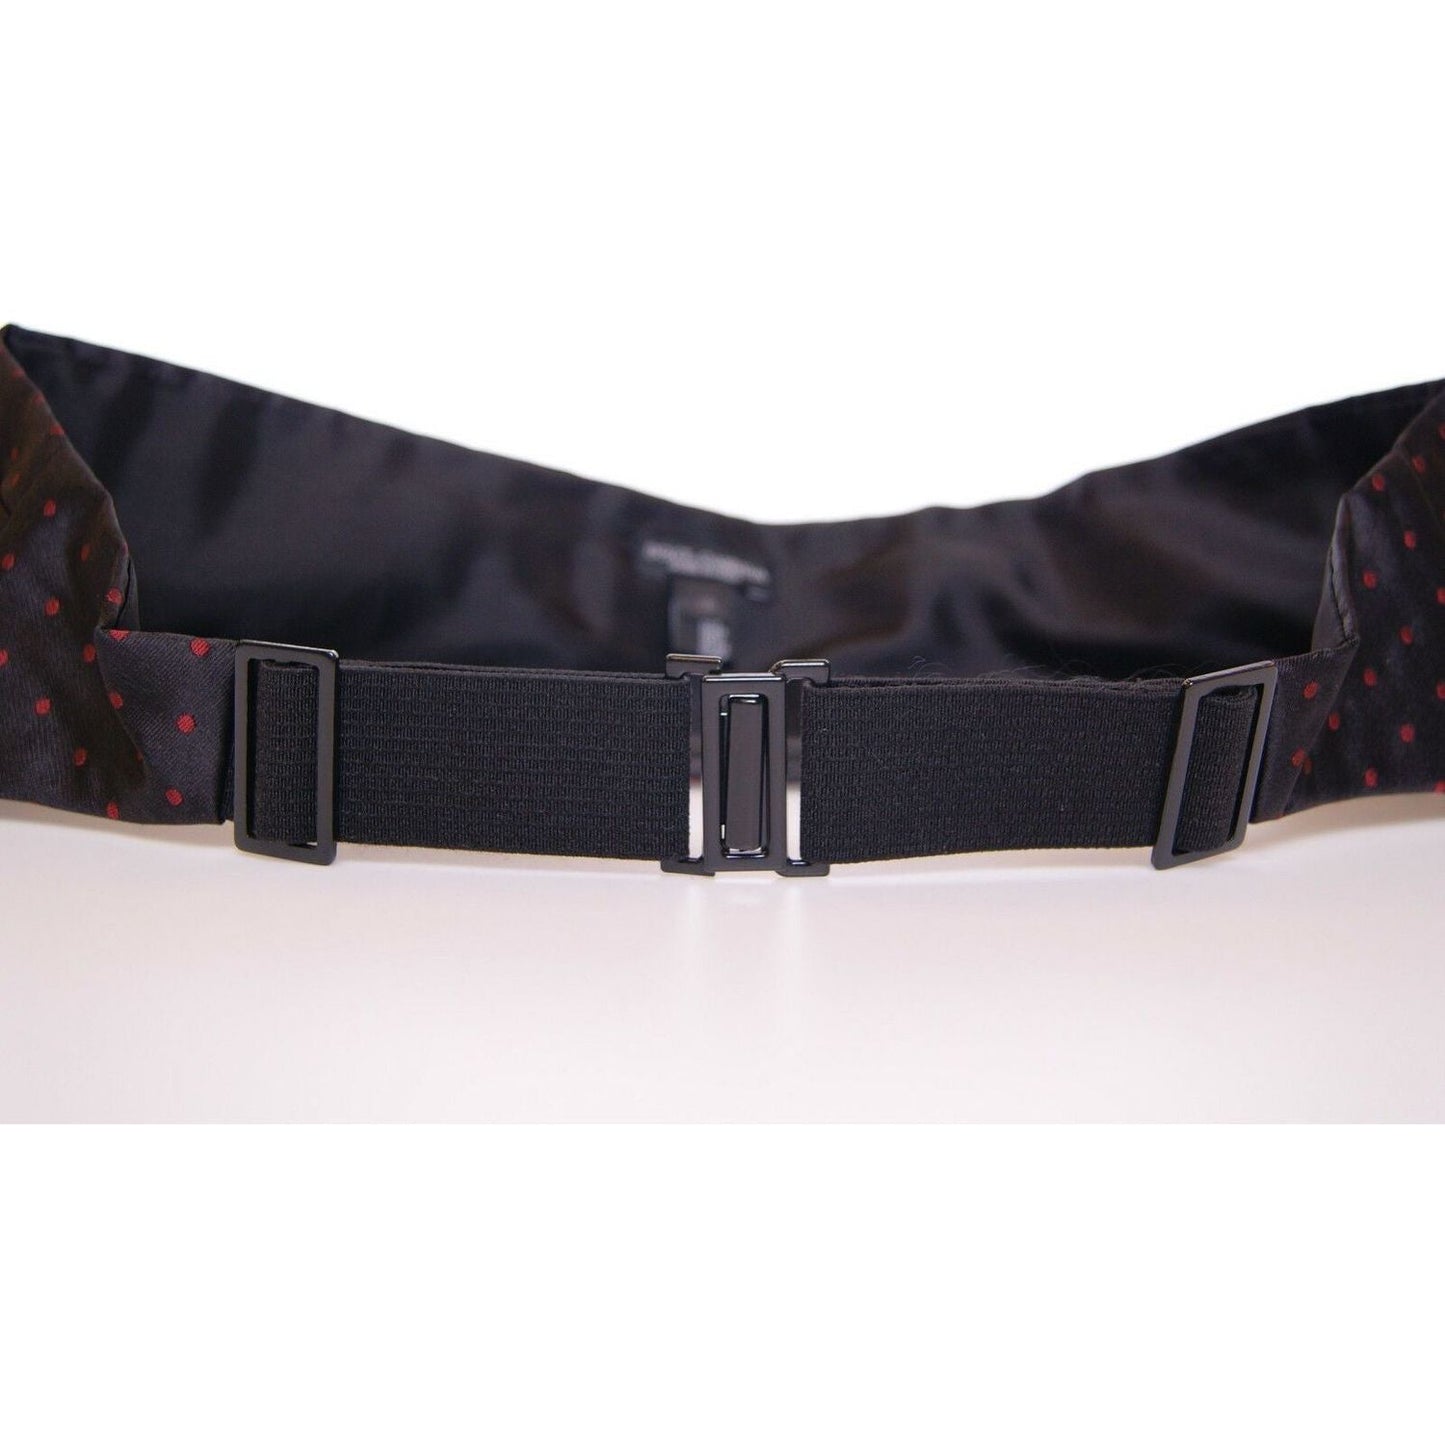 Dolce & Gabbana Elegant Silk Black Cummerbund with Red Polka Dots black-waist-tuxedo-smoking-belt-cummerbund